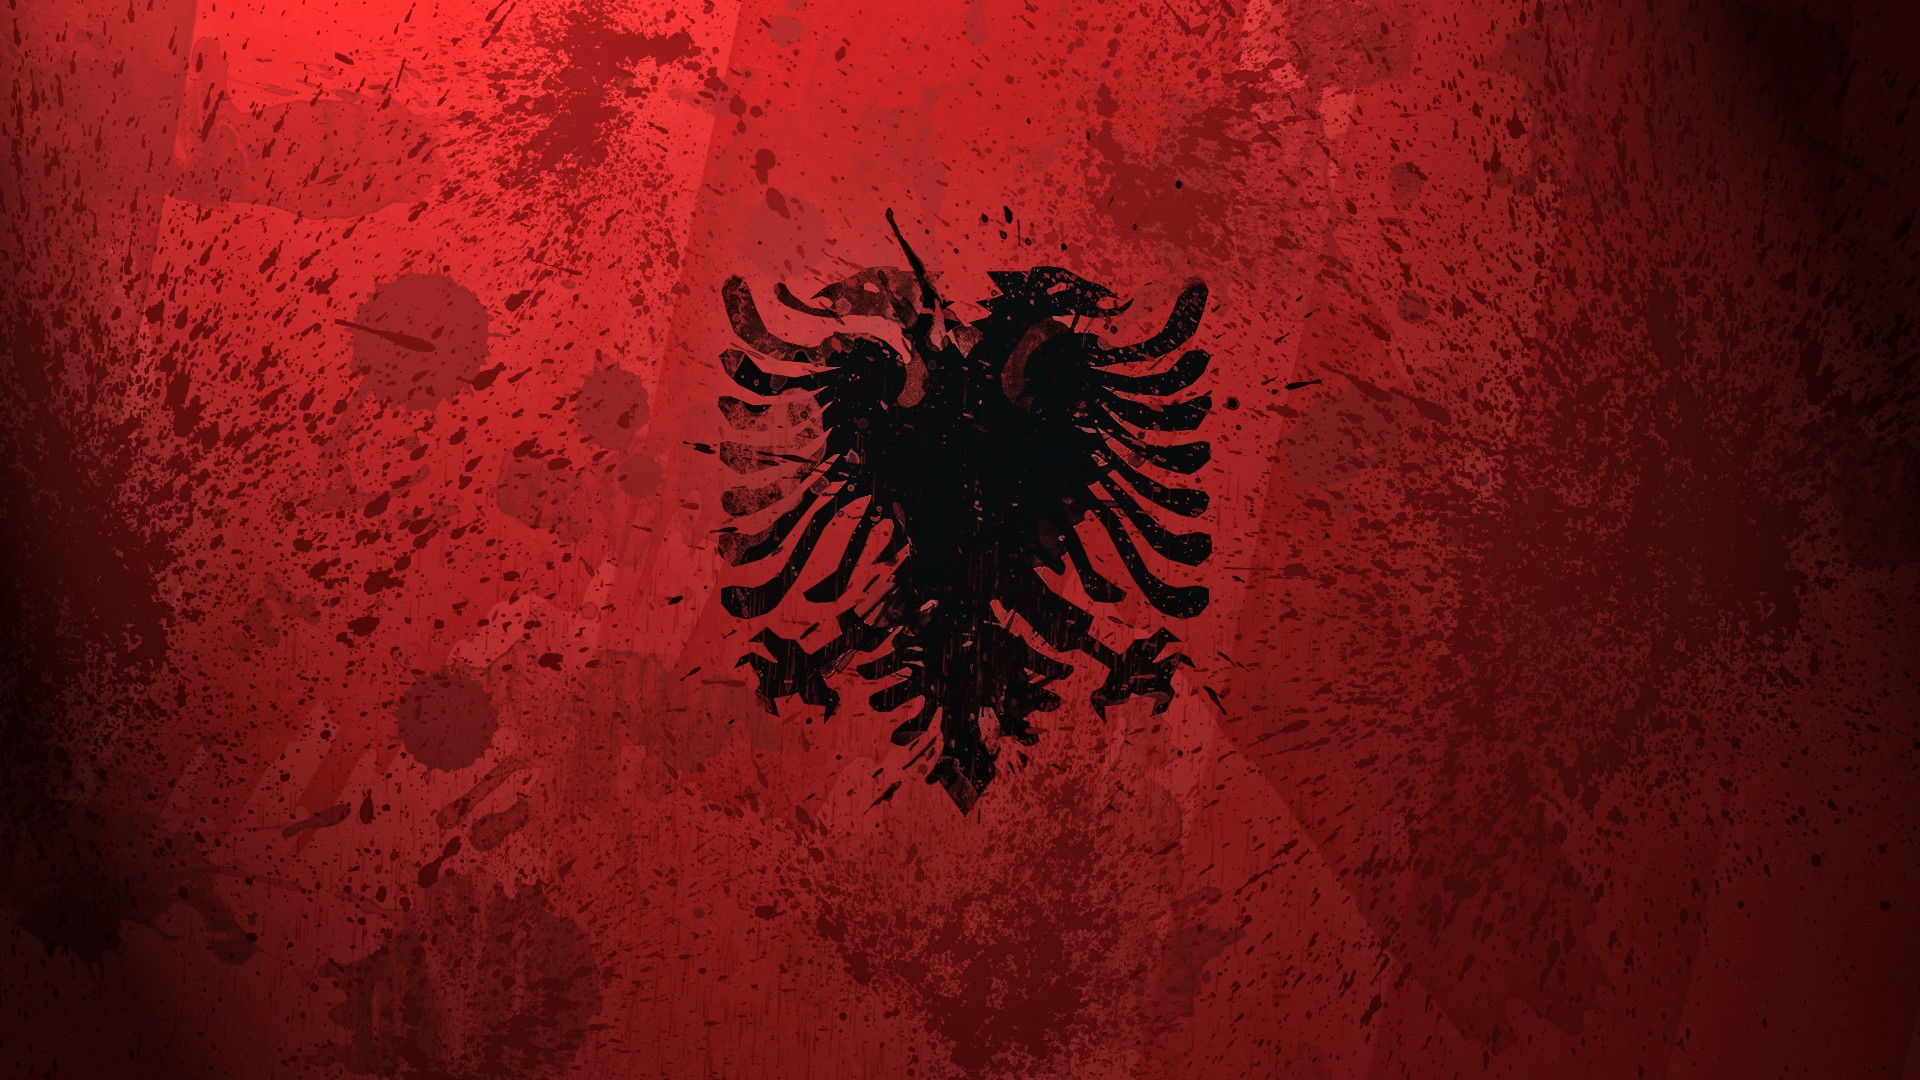 albanian-flag